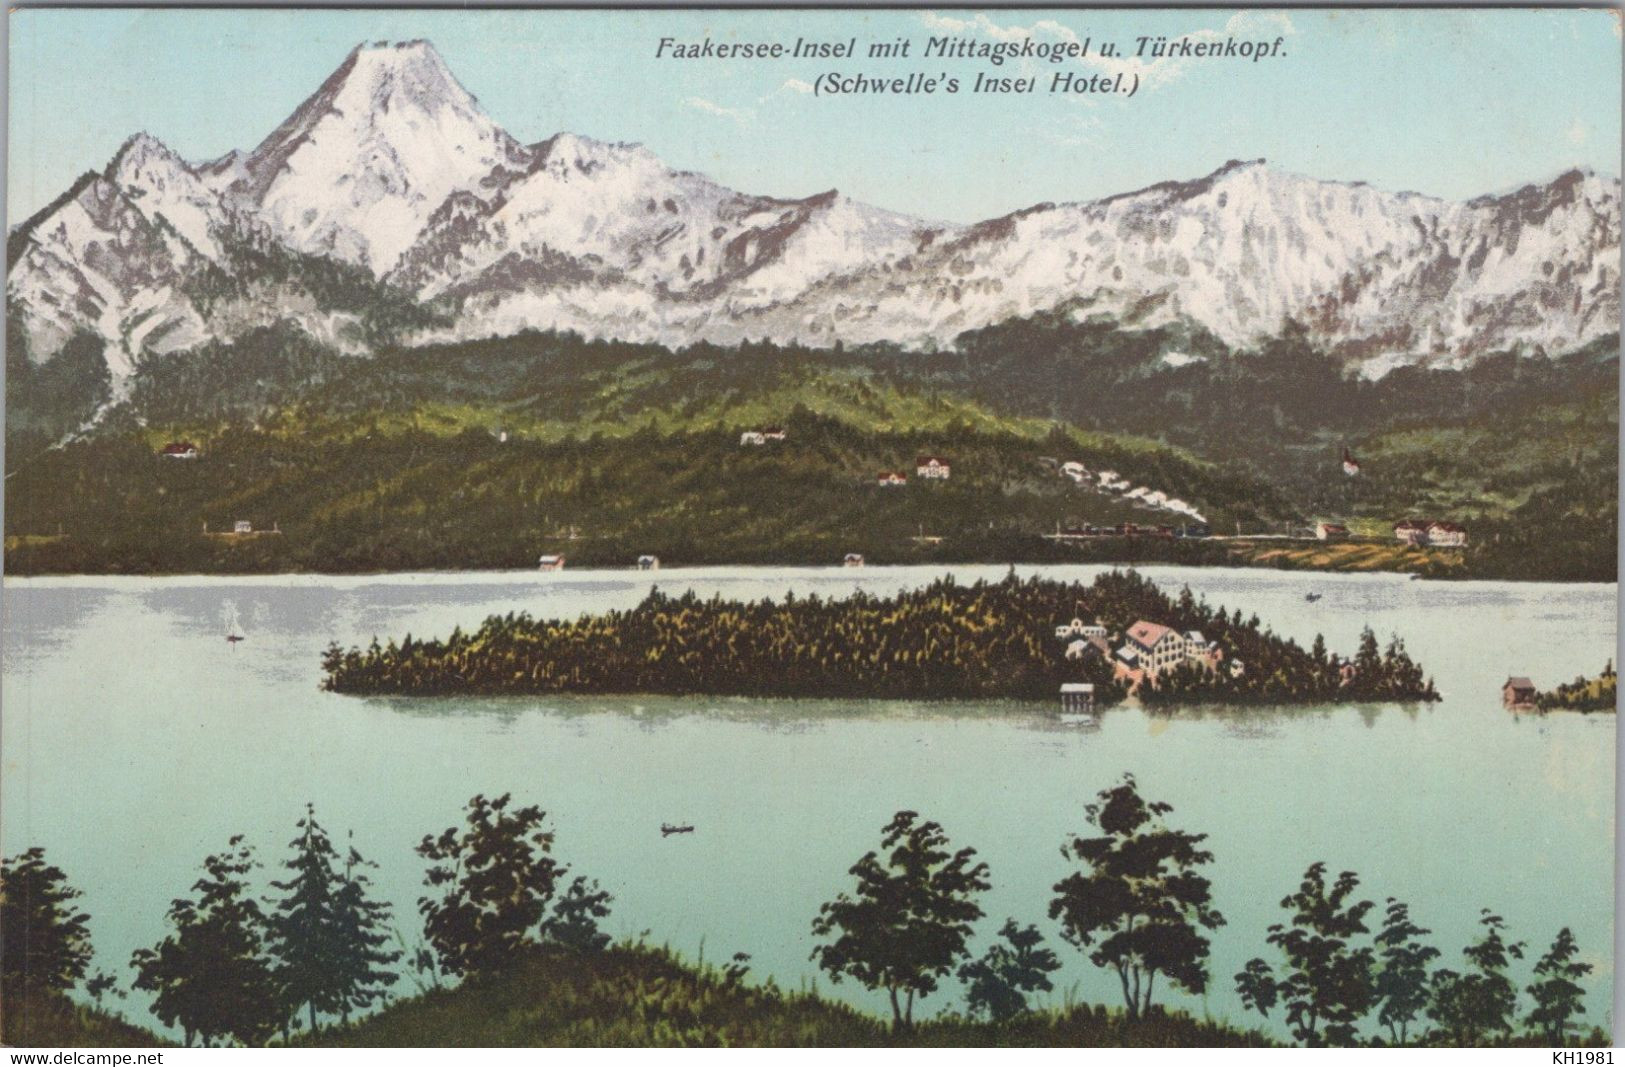 Faakersee-Insel - Faakersee-Orte